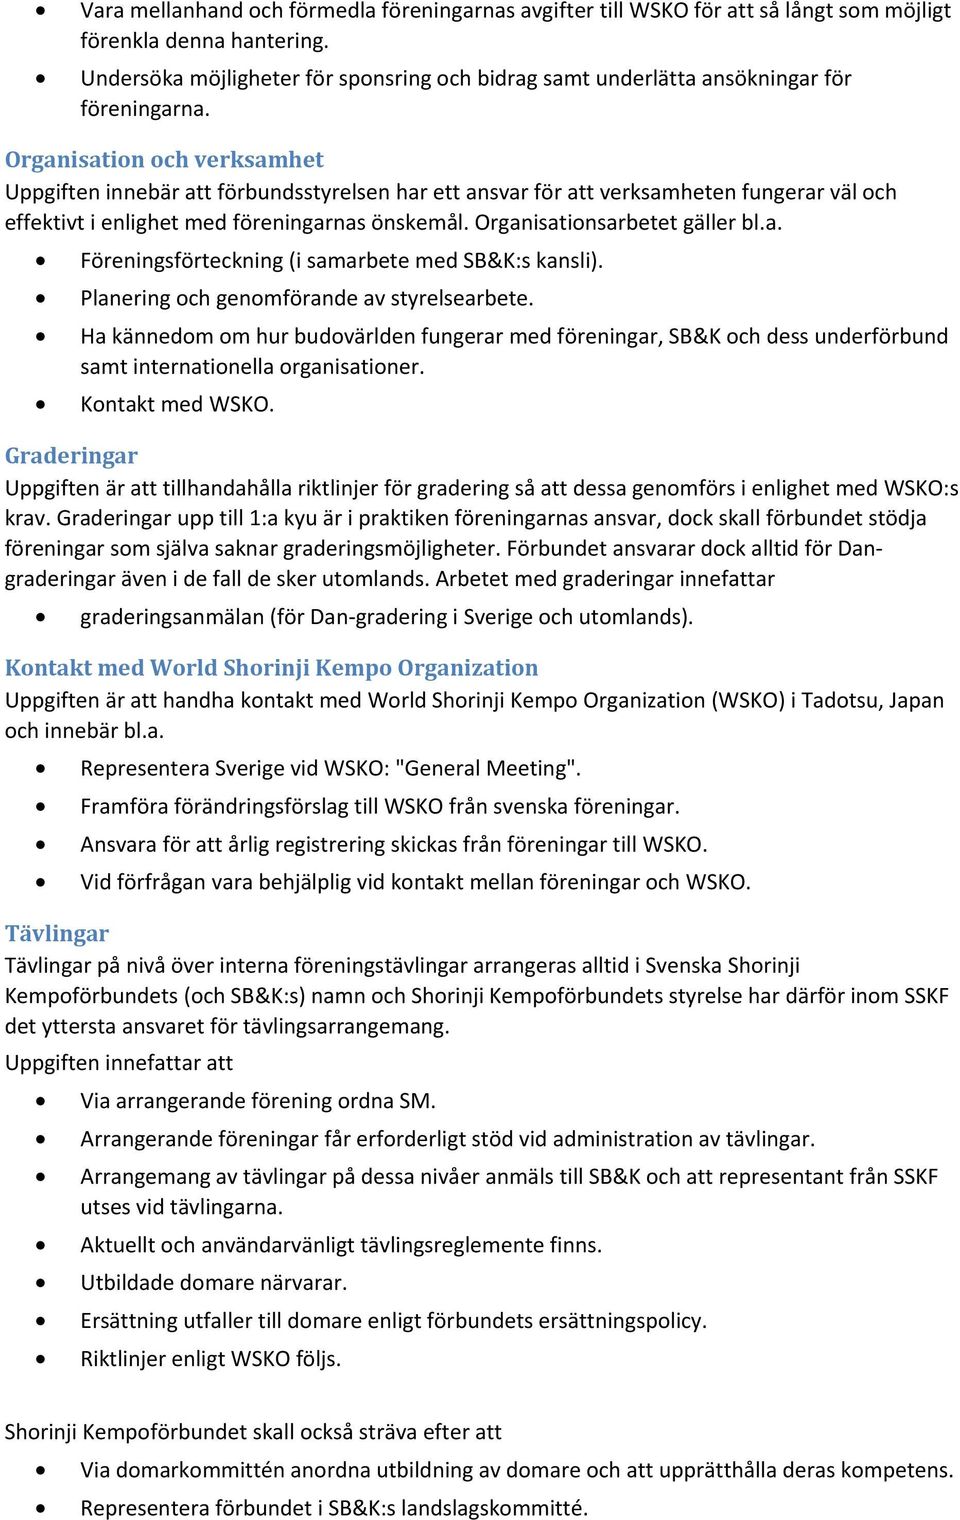 Organisationsplan, befattnings- och verksamhetsbeskrivning Svenska Shorinji  Kempoförbundet - PDF Gratis nedladdning